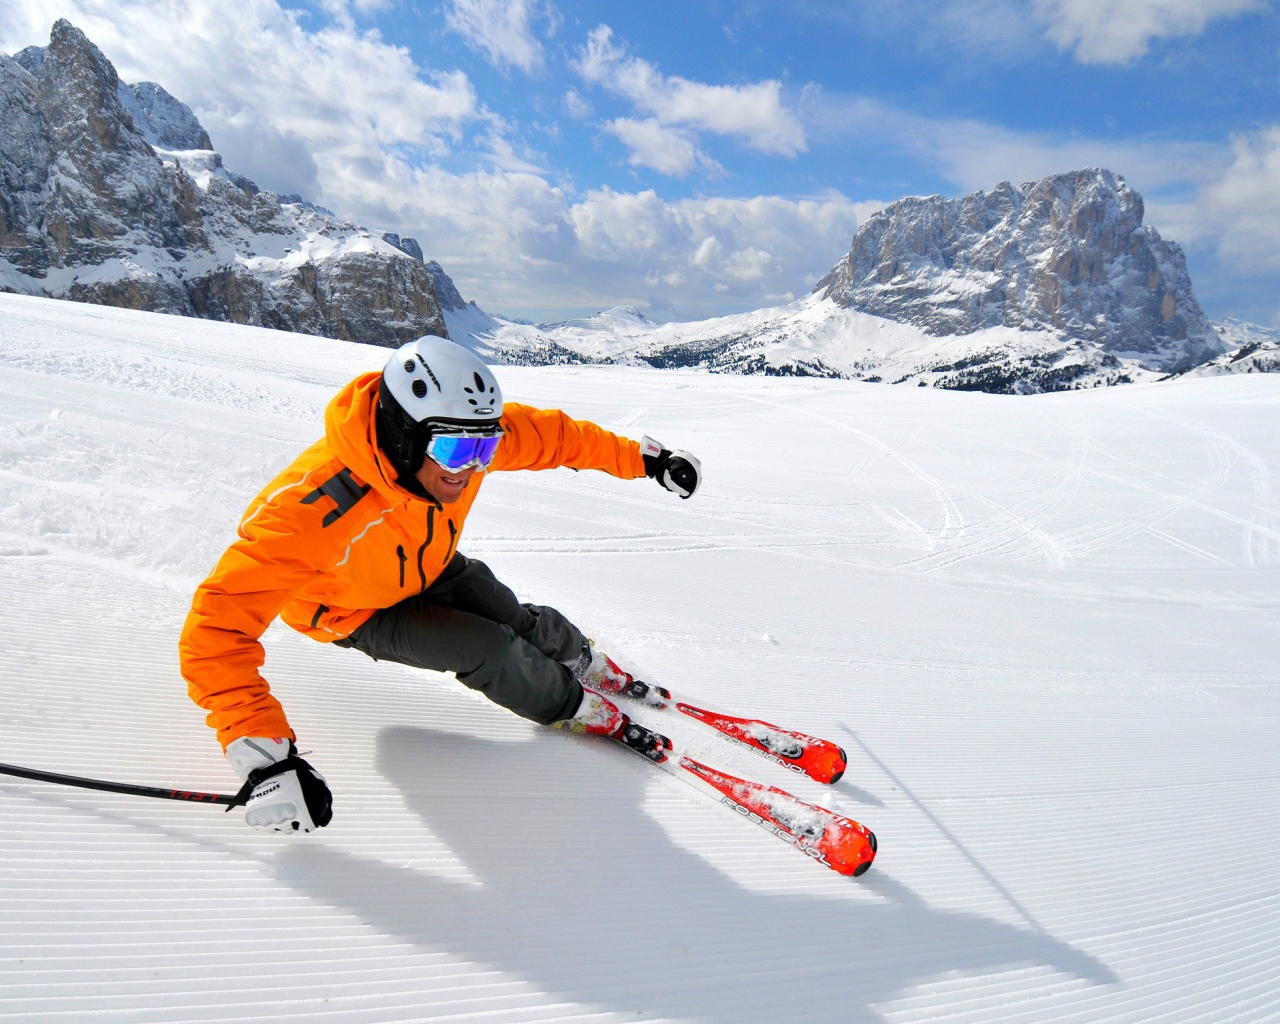 Спуск на лыжах на горнолыжном курорте Валь Гардена, Италия